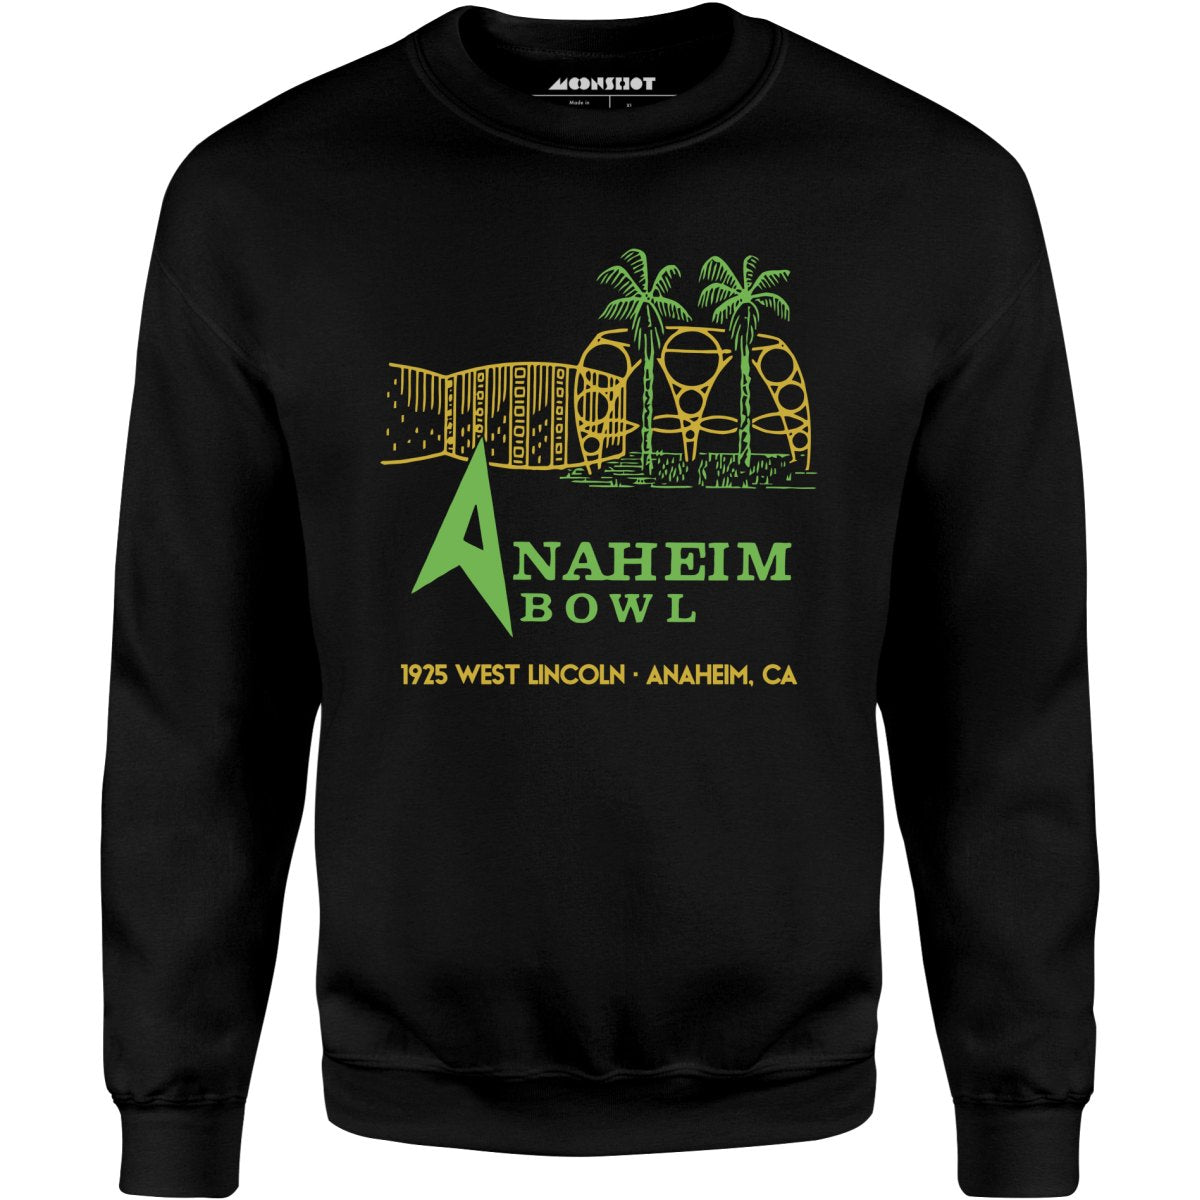 Anaheim Bowl - Anaheim, CA - Vintage Bowling Alley - Unisex Sweatshirt